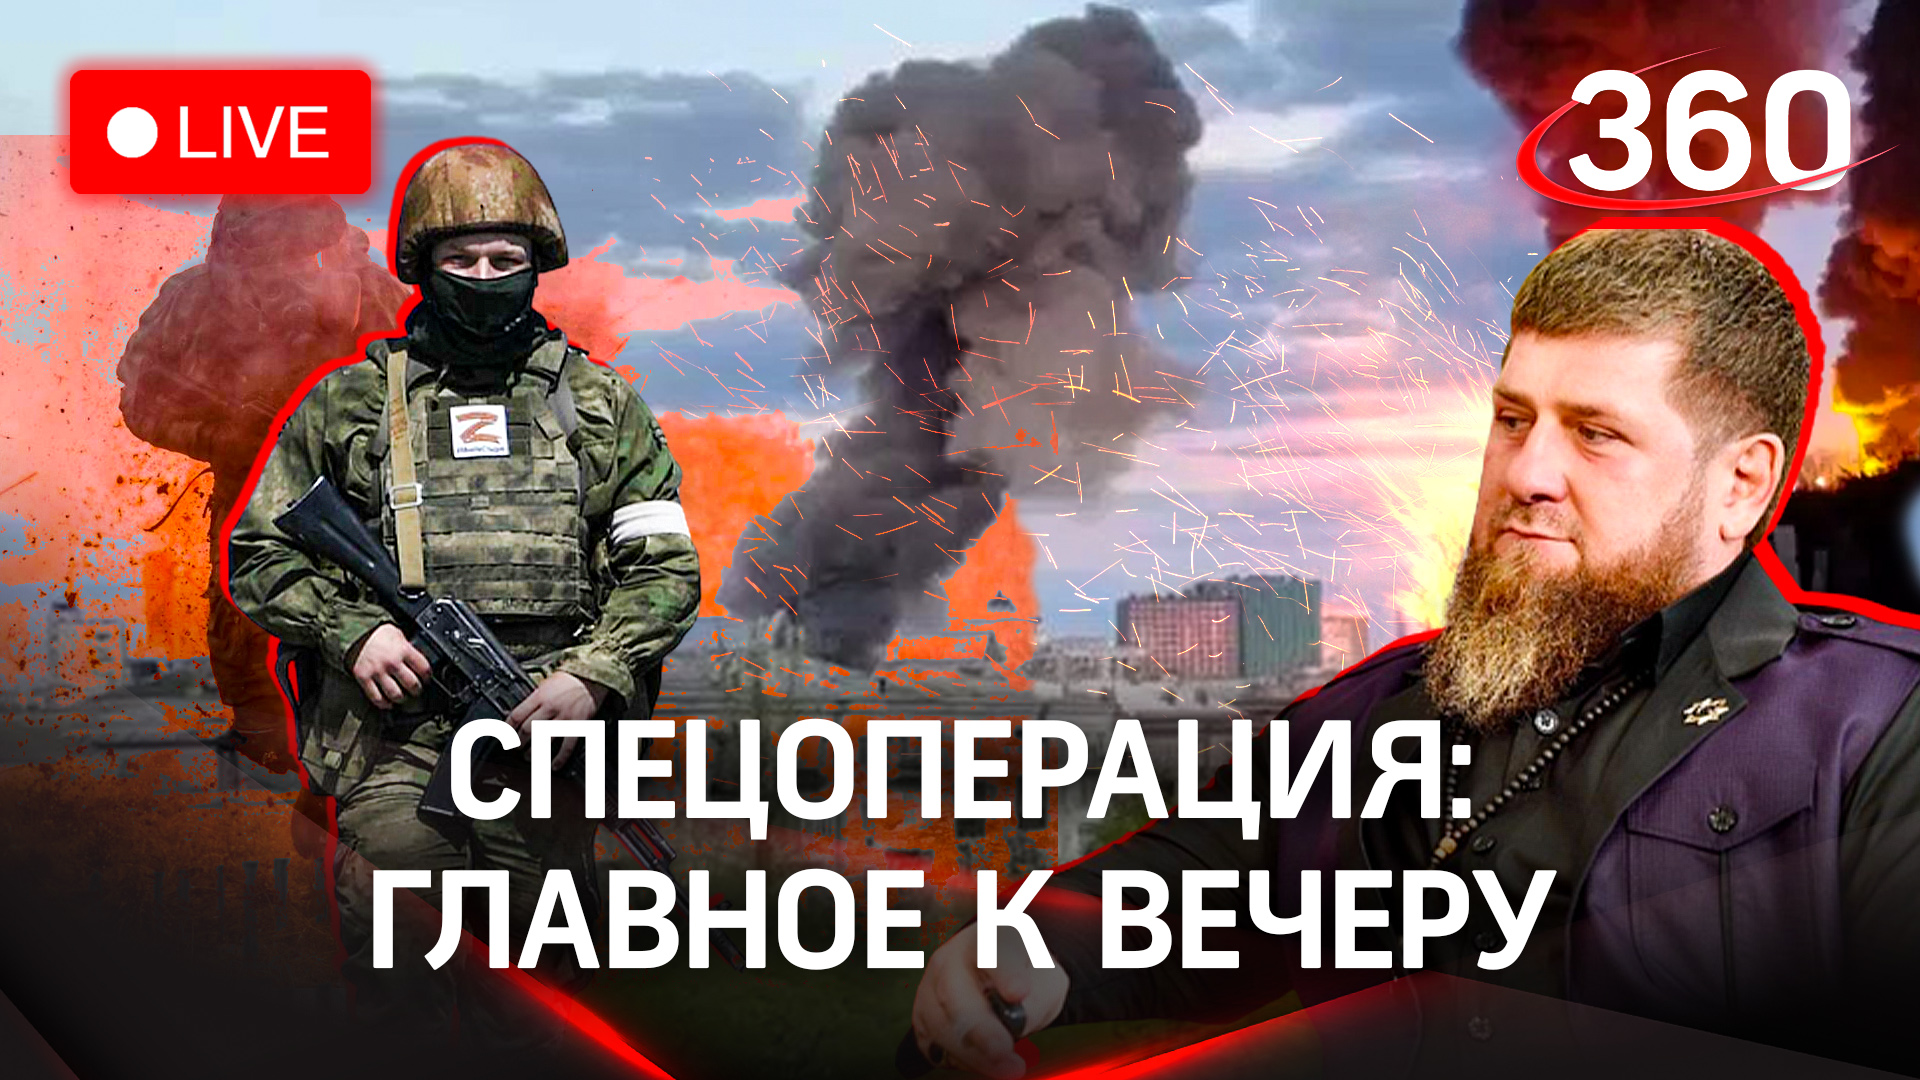 Кадыров - о том, какой лидер нужен Украине.Обстрел погранпункта под Брянском.Удар по заводу в Киеве